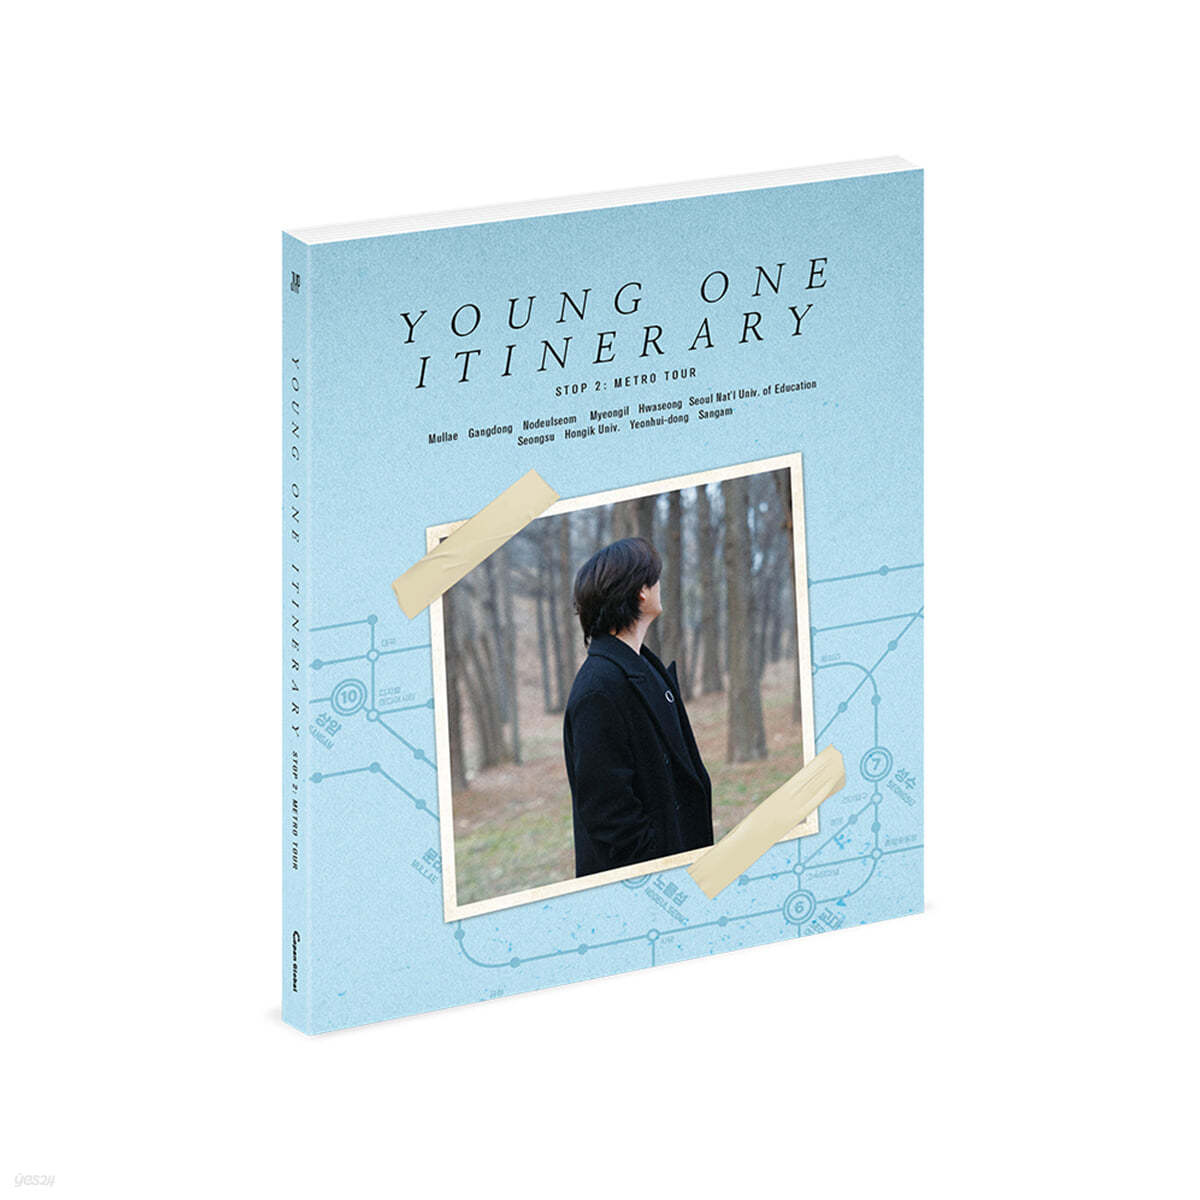 영케이 (Young K) - 포토에세이 시즌2 &#39;YOUNG ONE ITINERARY - STOP2: METRO TOUR&#39;